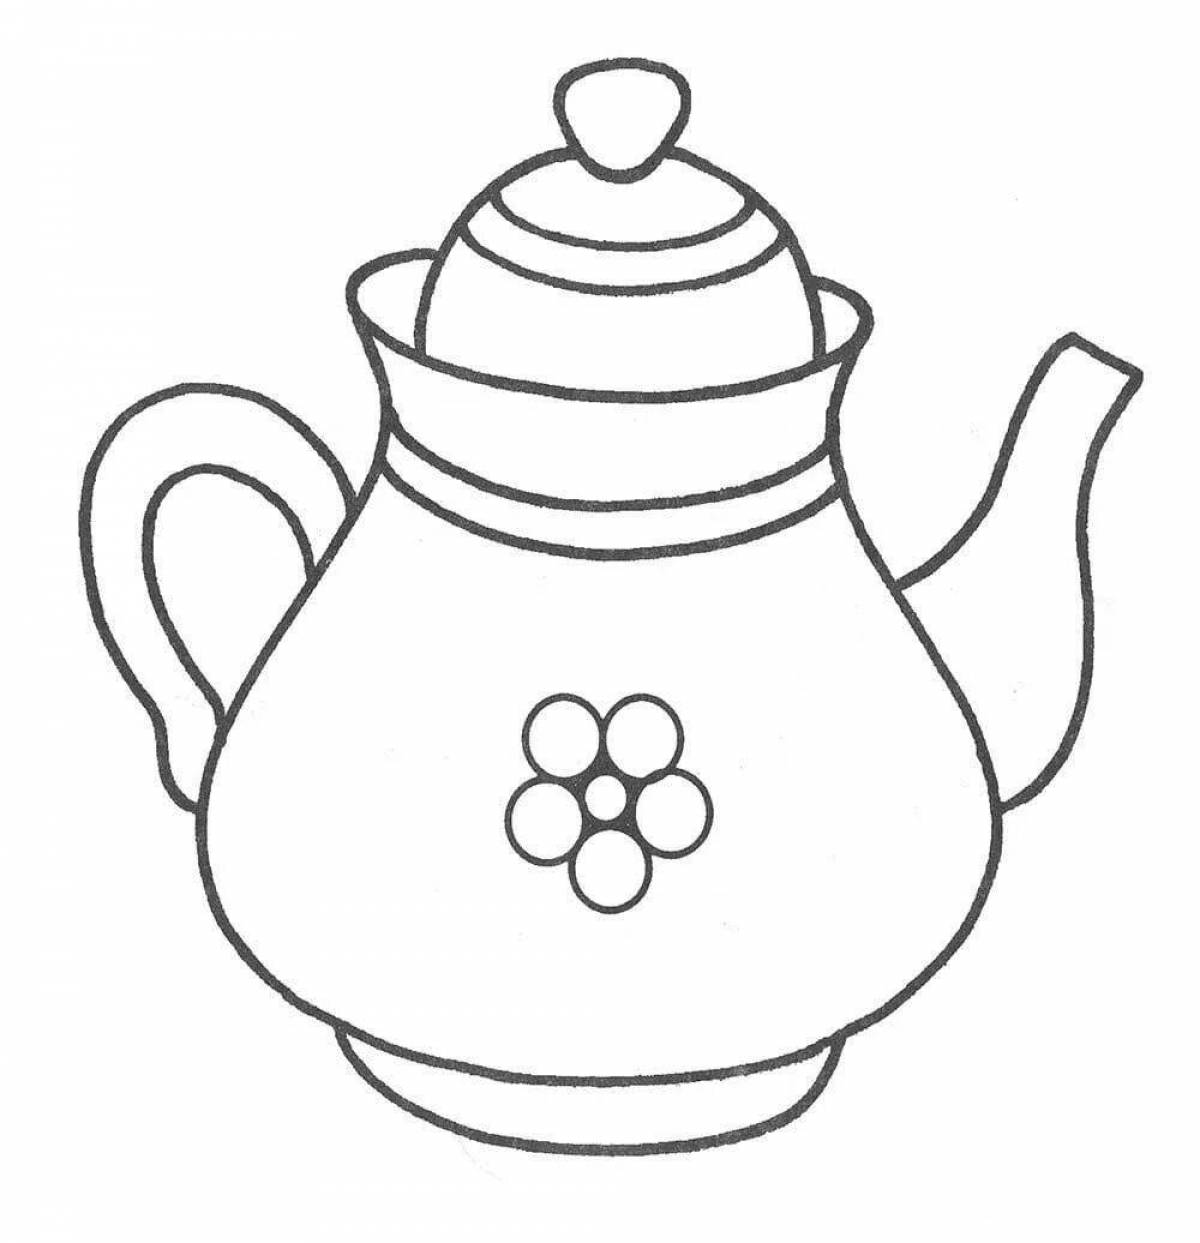 Wonderful teapot coloring book